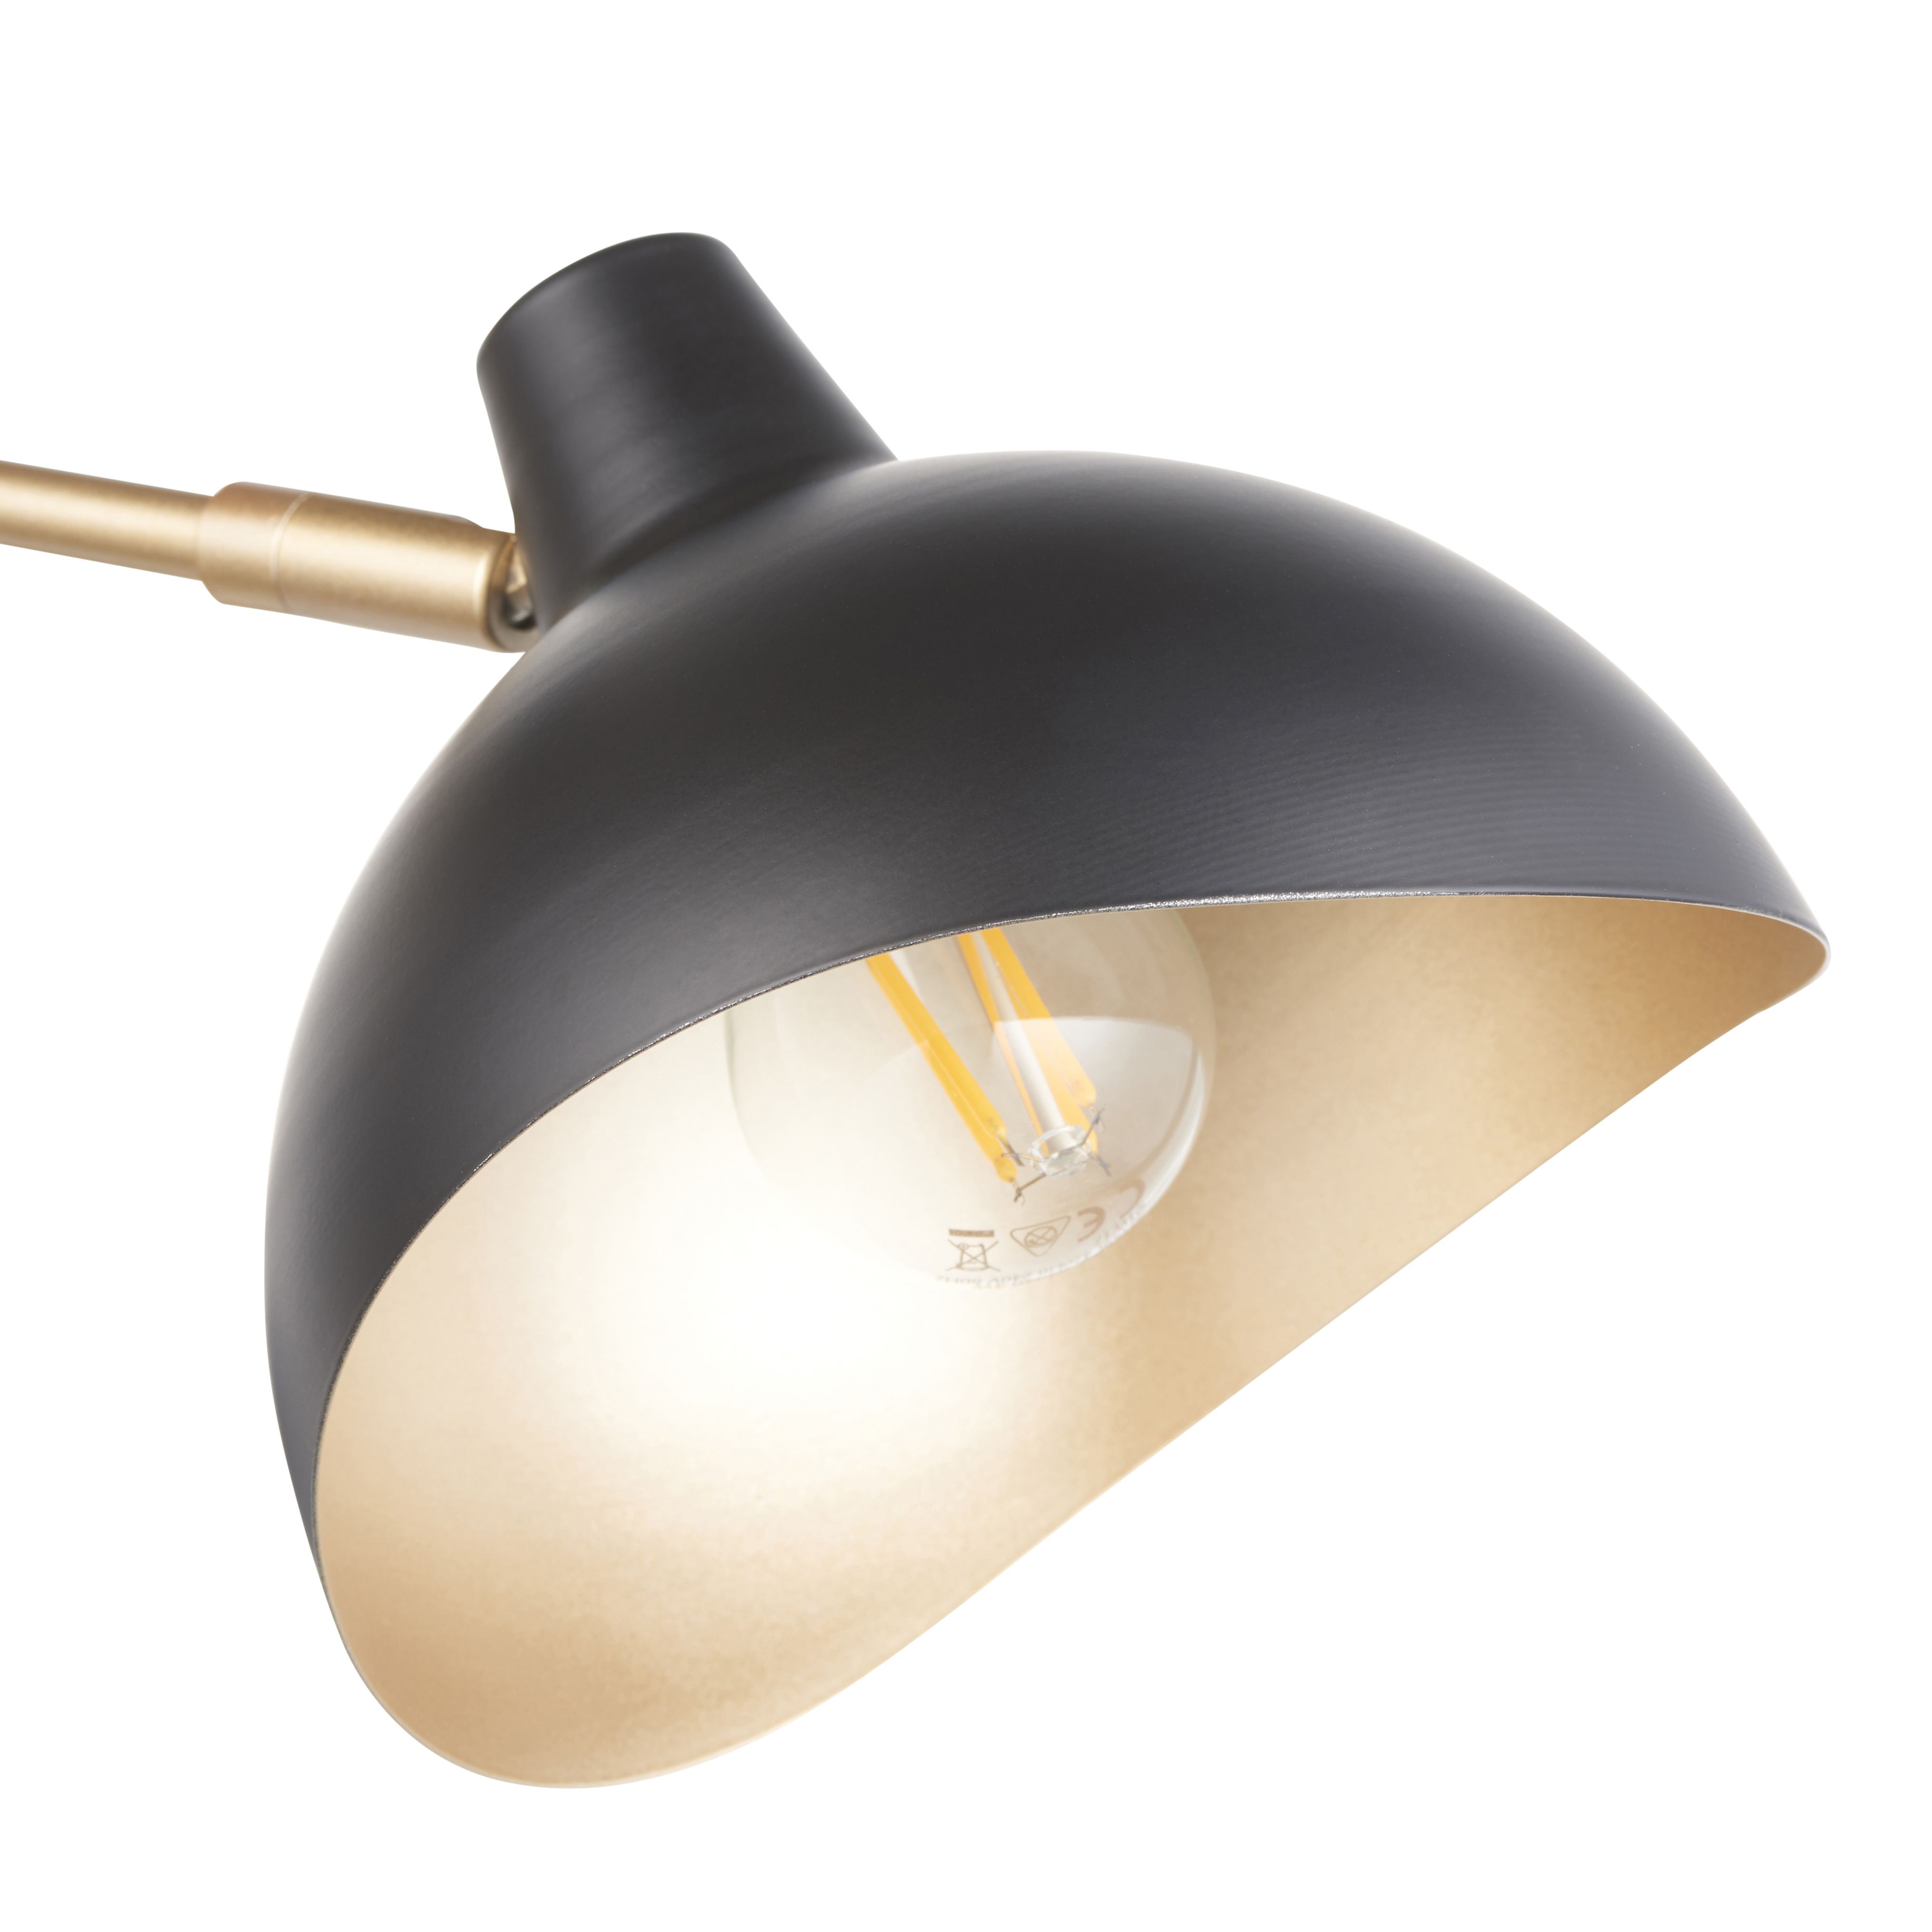 Anara Steel Black 3 Lamp LED Ceiling light